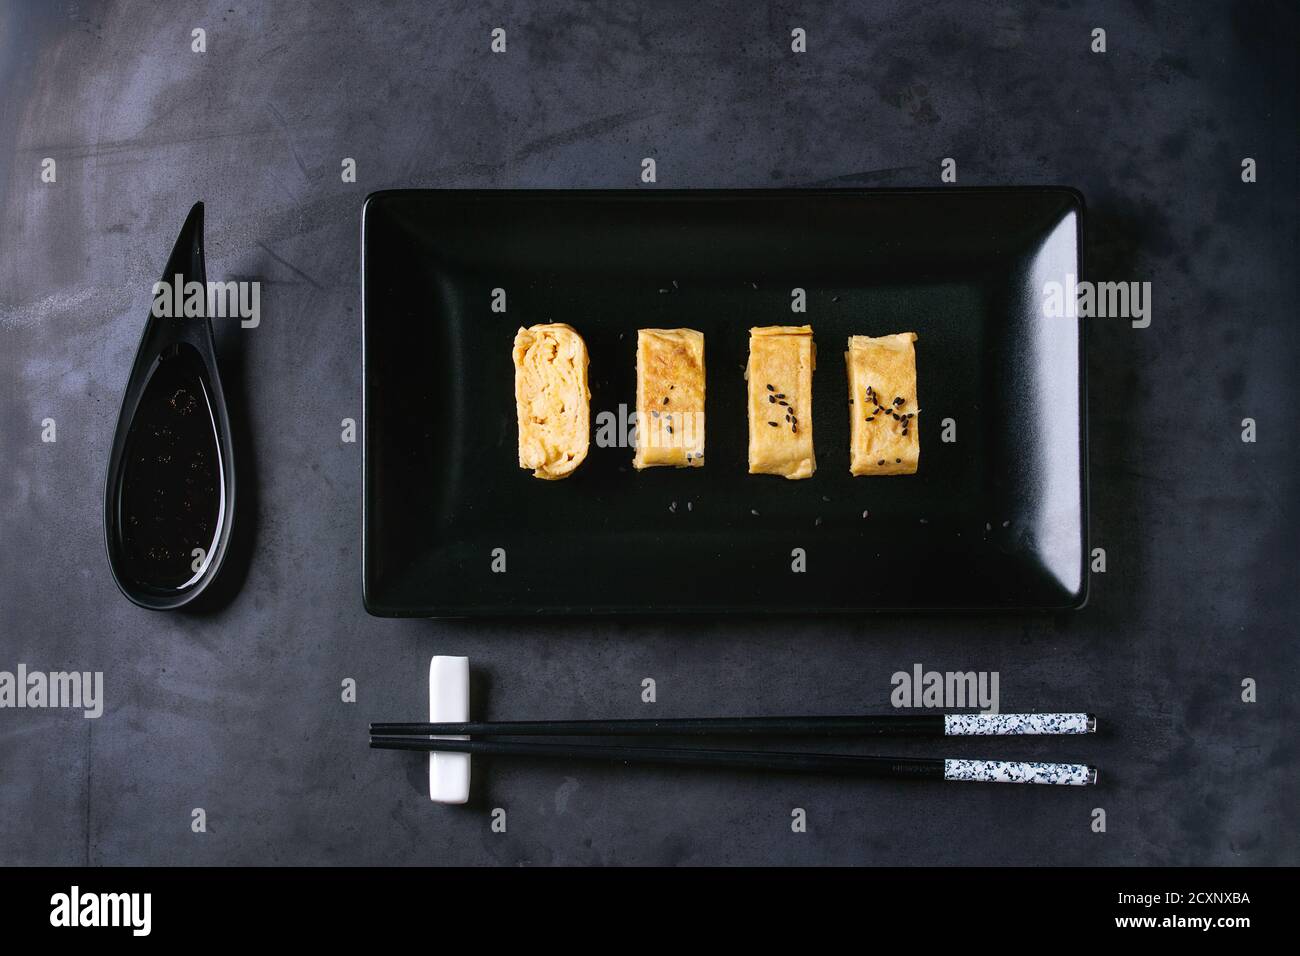 Giapponese frittata arrotolata Tamagoyaki affettata con seasame nero semi e la salsa di soia, servita nel quadrato nero piastra in ceramica con bacchette oltre il buio meta Foto Stock